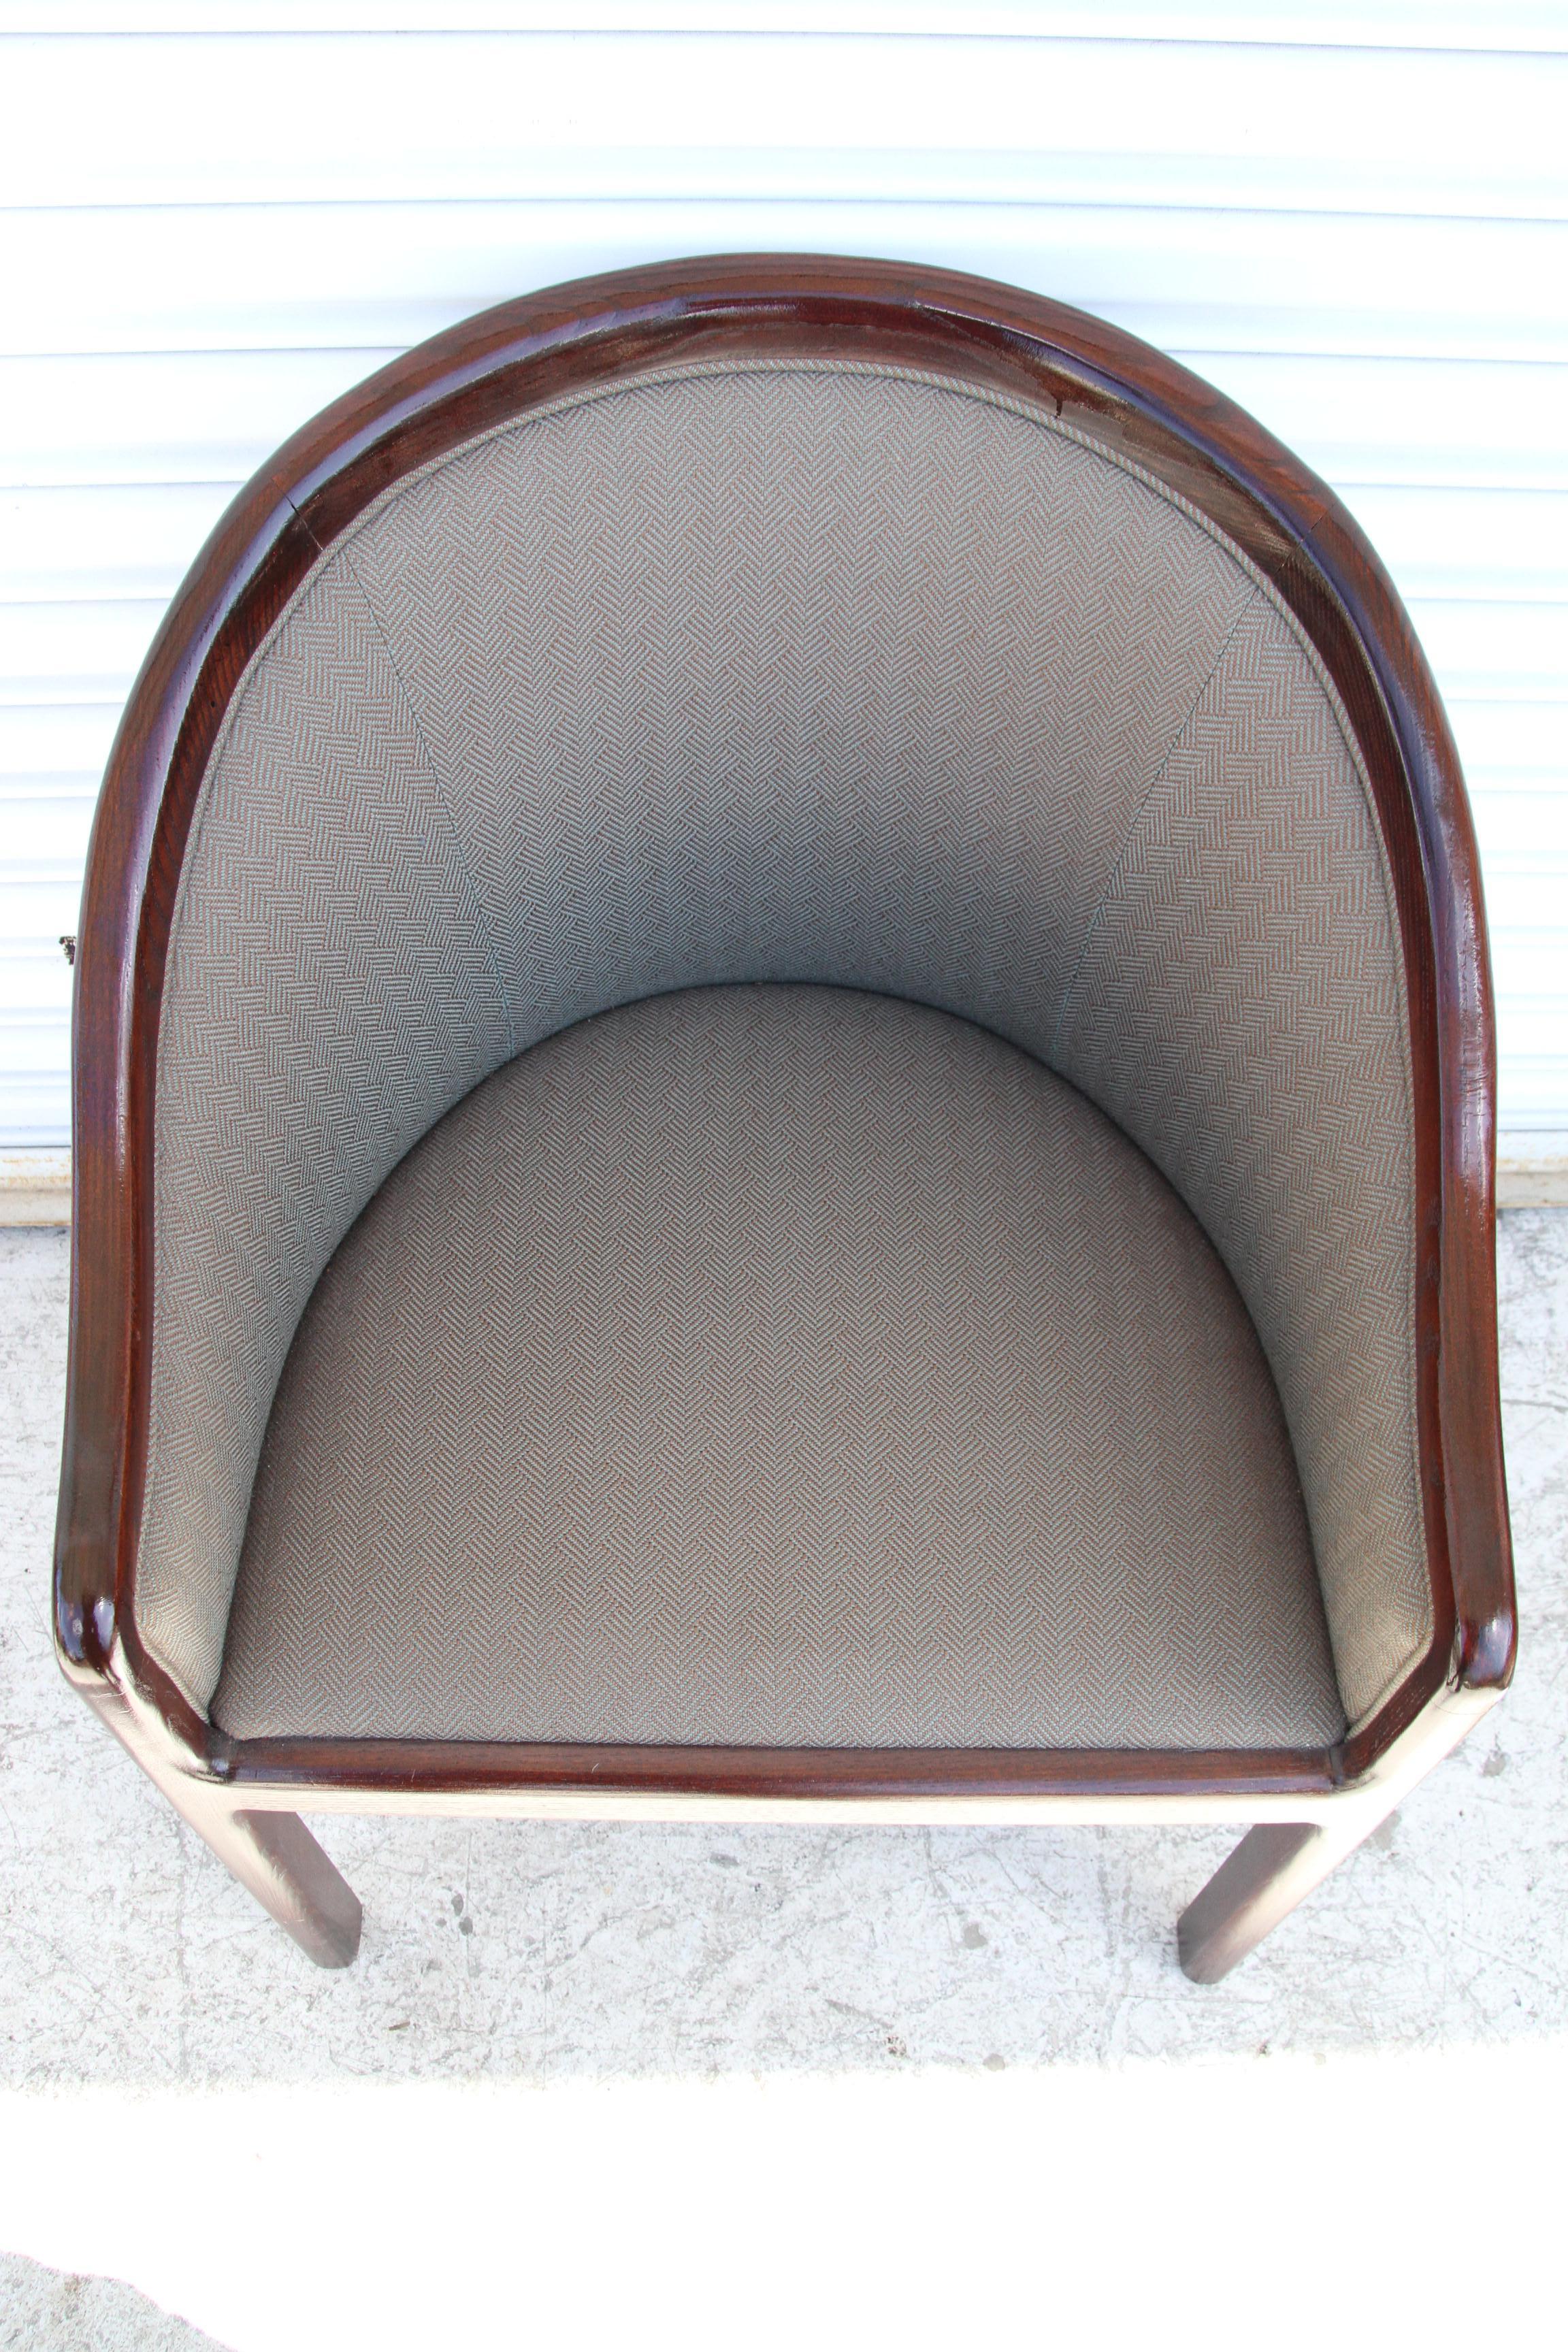 1 Midcentury Jack Lenor Larsen Barrel Chair 1